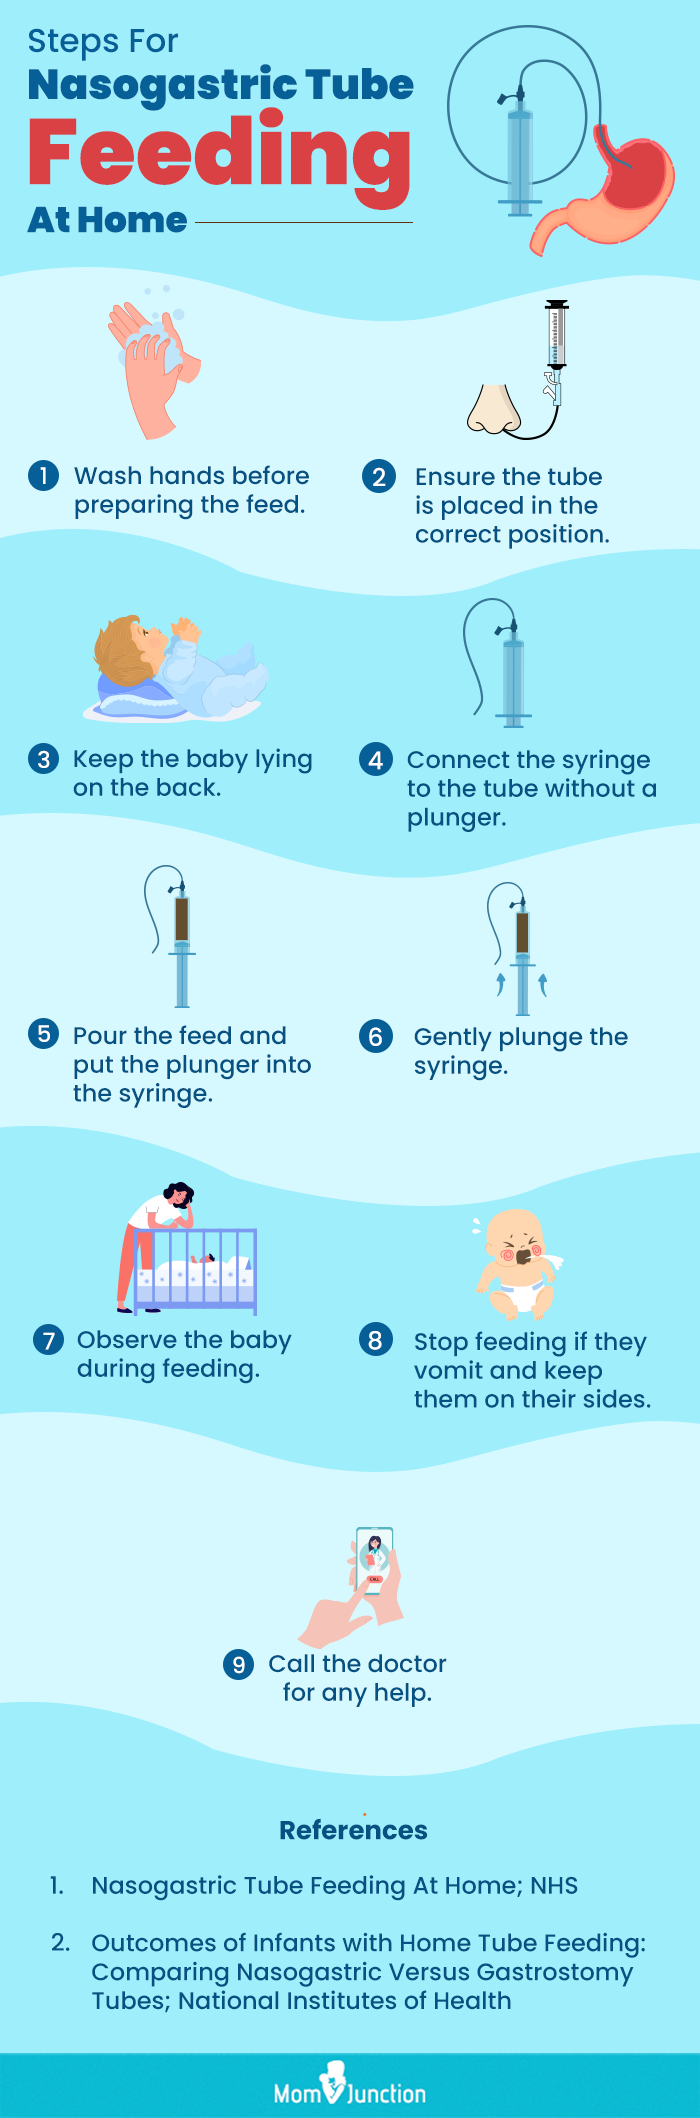 steps for nasogastric tube feeding at home (infographic)